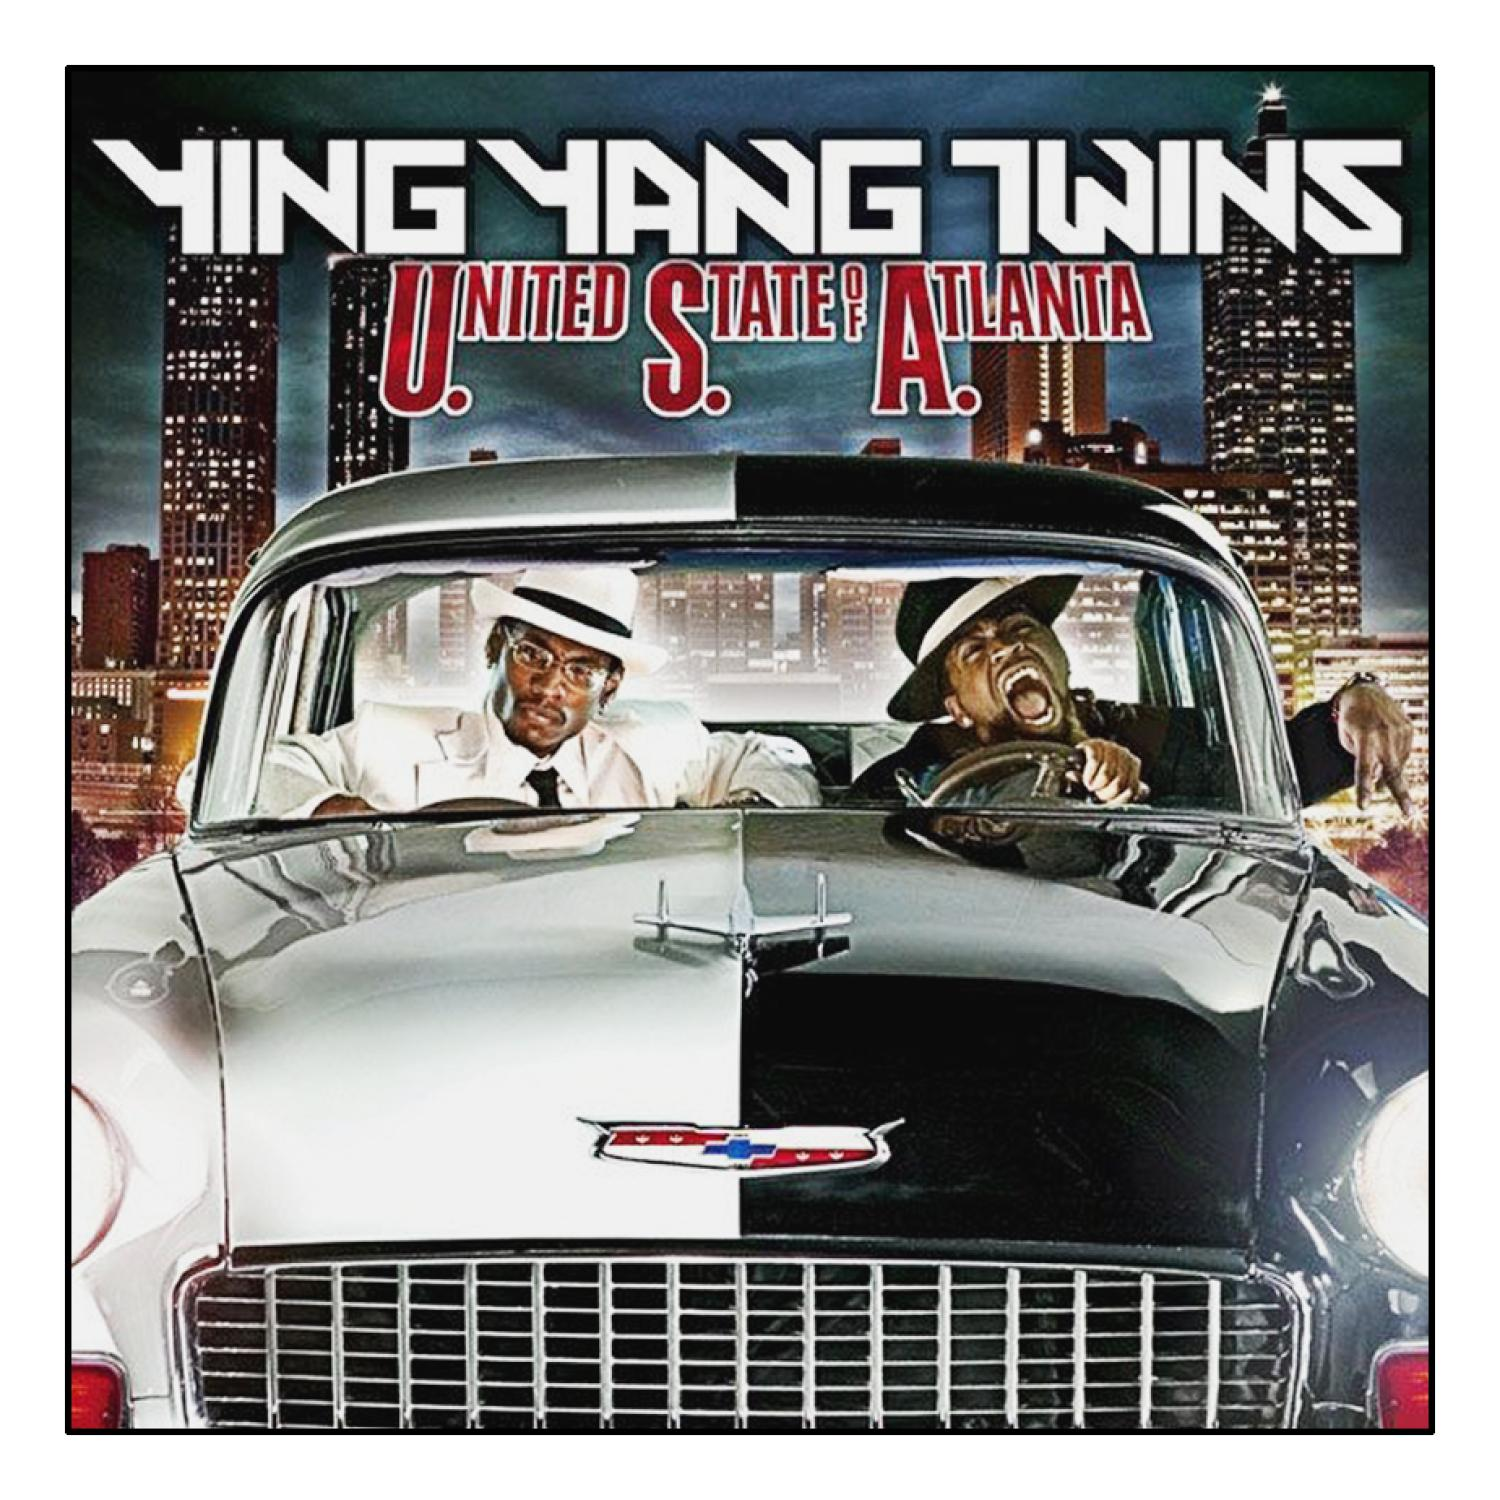 States of Atlanta Twins Ying - United (CD) - Yang